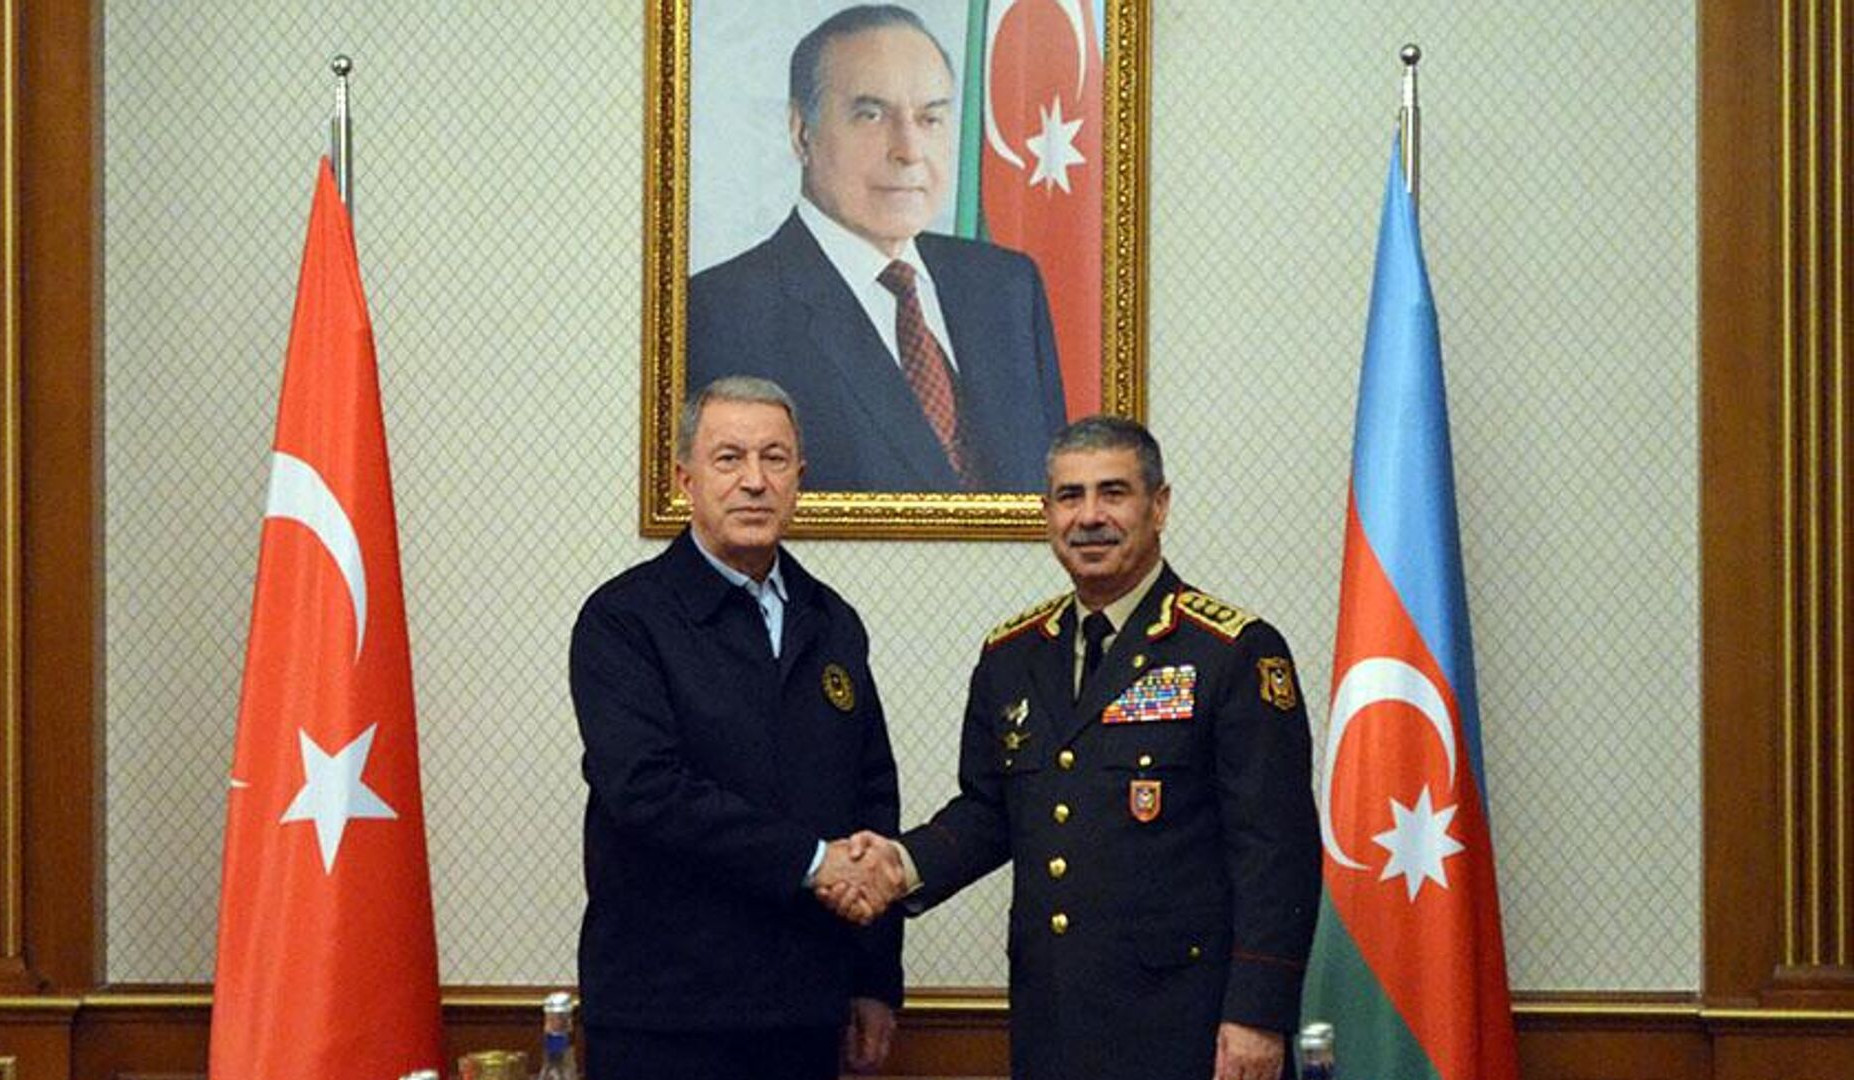 Ադրբեջանի և Թուրքիայի պաշտպանության նախարարները քննարկել են ռազմական համագործակցության զարգացման հարցեր